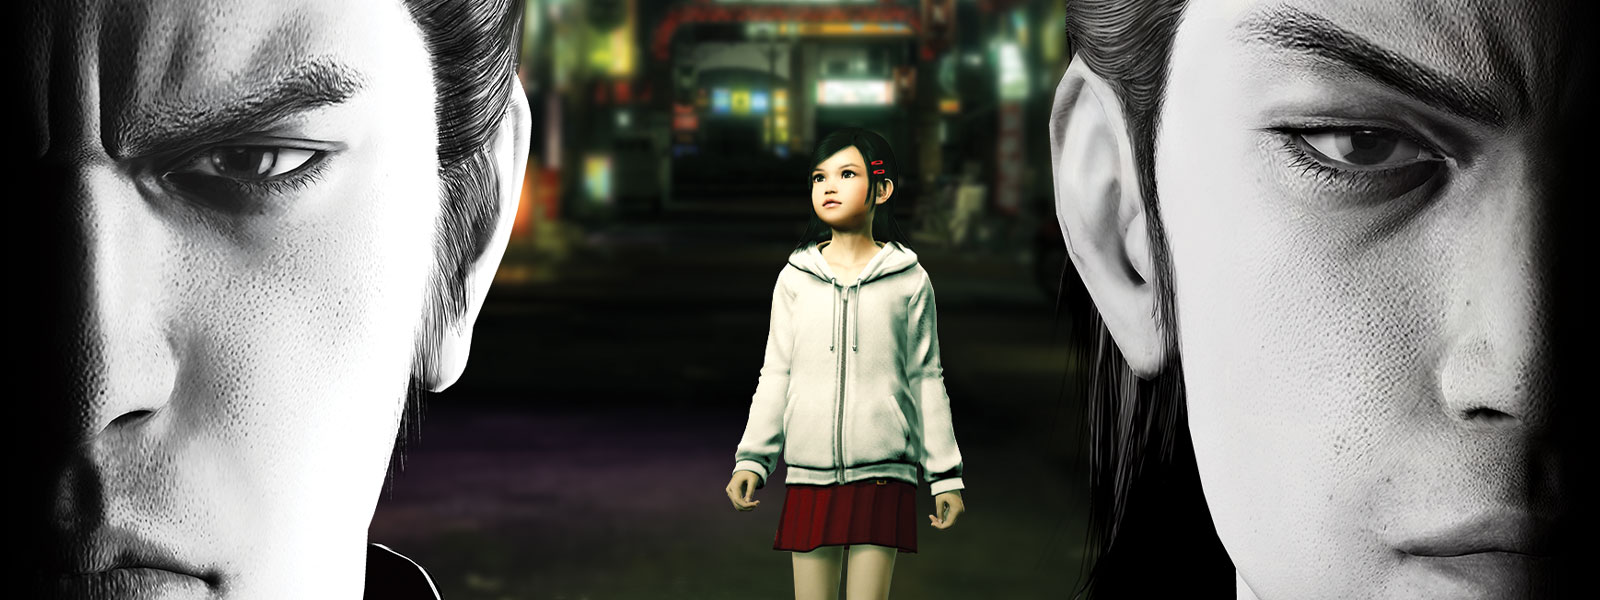 Dois personagens do Yakuza olham sombriamente para a frente, enquanto uma garotinha está de pé na cidade atrás deles.